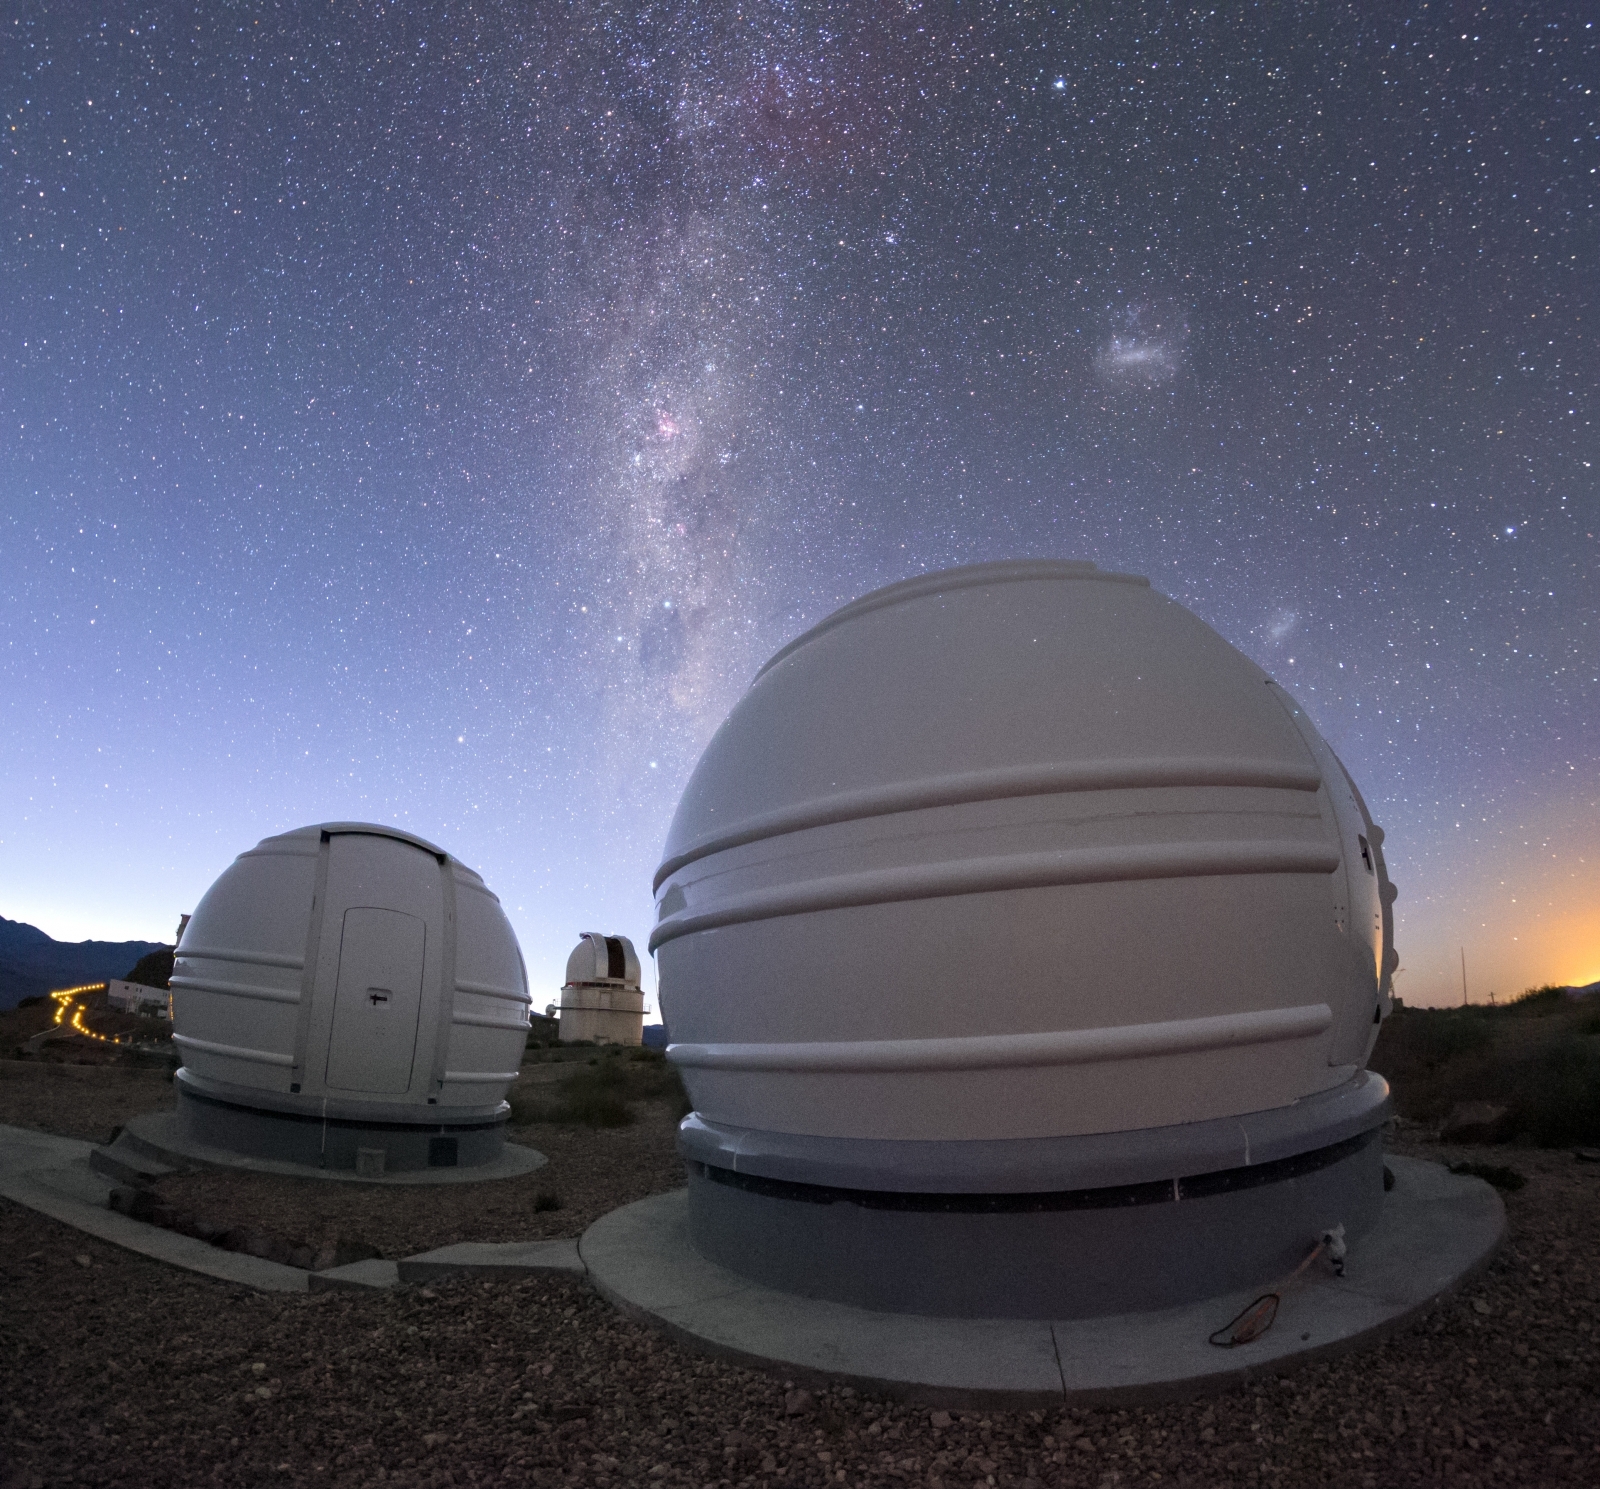 ExTra telescopes